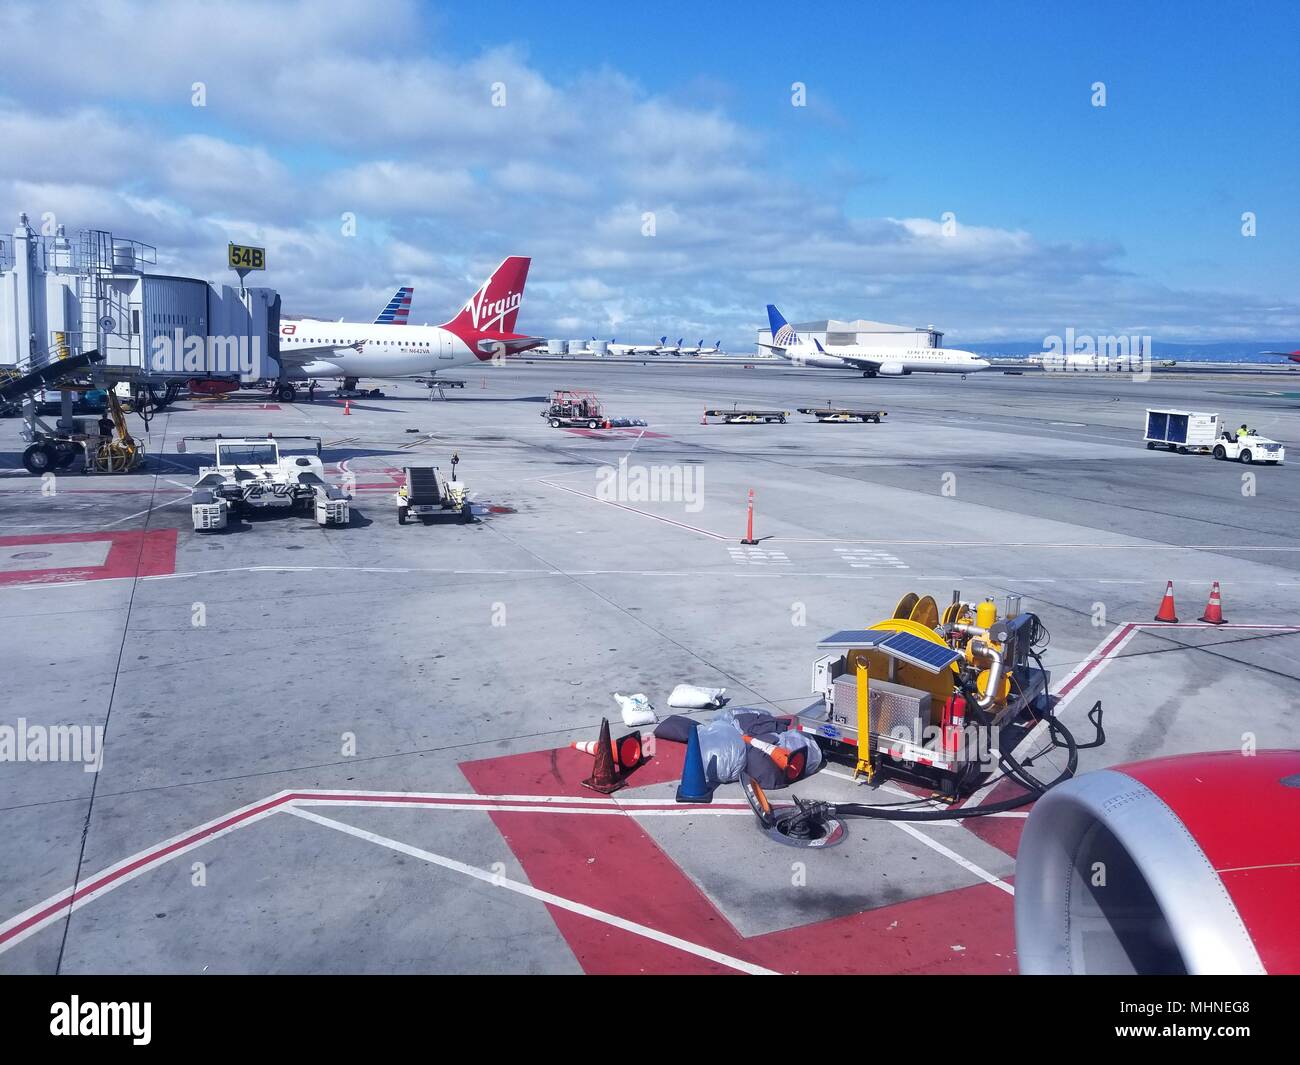 Aviones, incluidos varios aviones de Virgin America, sobre el asfalto en el Aeropuerto Internacional de San Francisco (SFO), San Francisco, California, 13 de septiembre de 2017. () Foto de stock